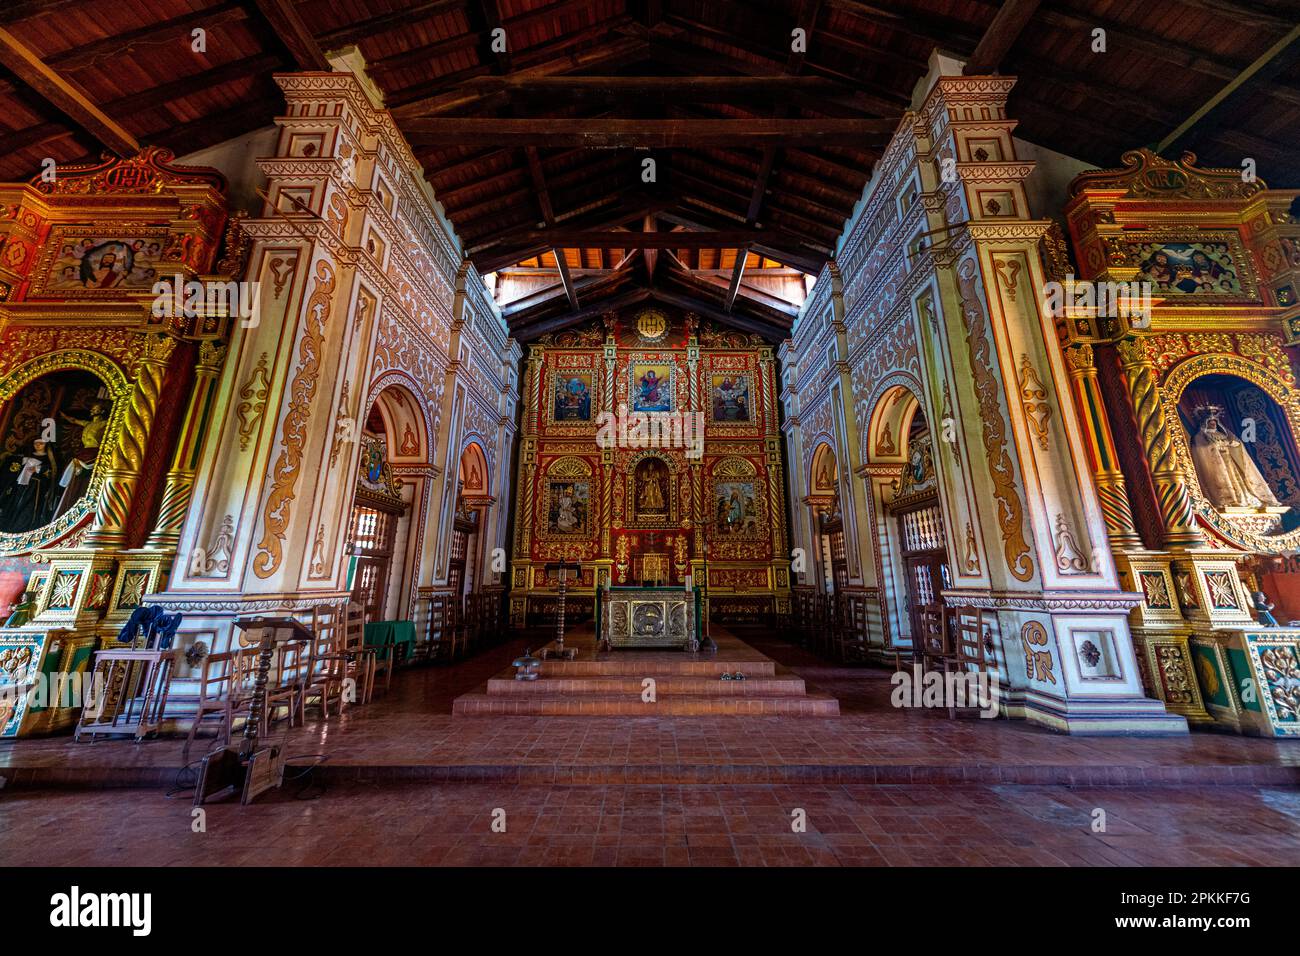 Intérieur de la Mission de Concepcion, missions jésuites de Chiquitos, site du patrimoine mondial de l'UNESCO, département de Santa Cruz, Bolivie, Amérique du Sud Banque D'Images